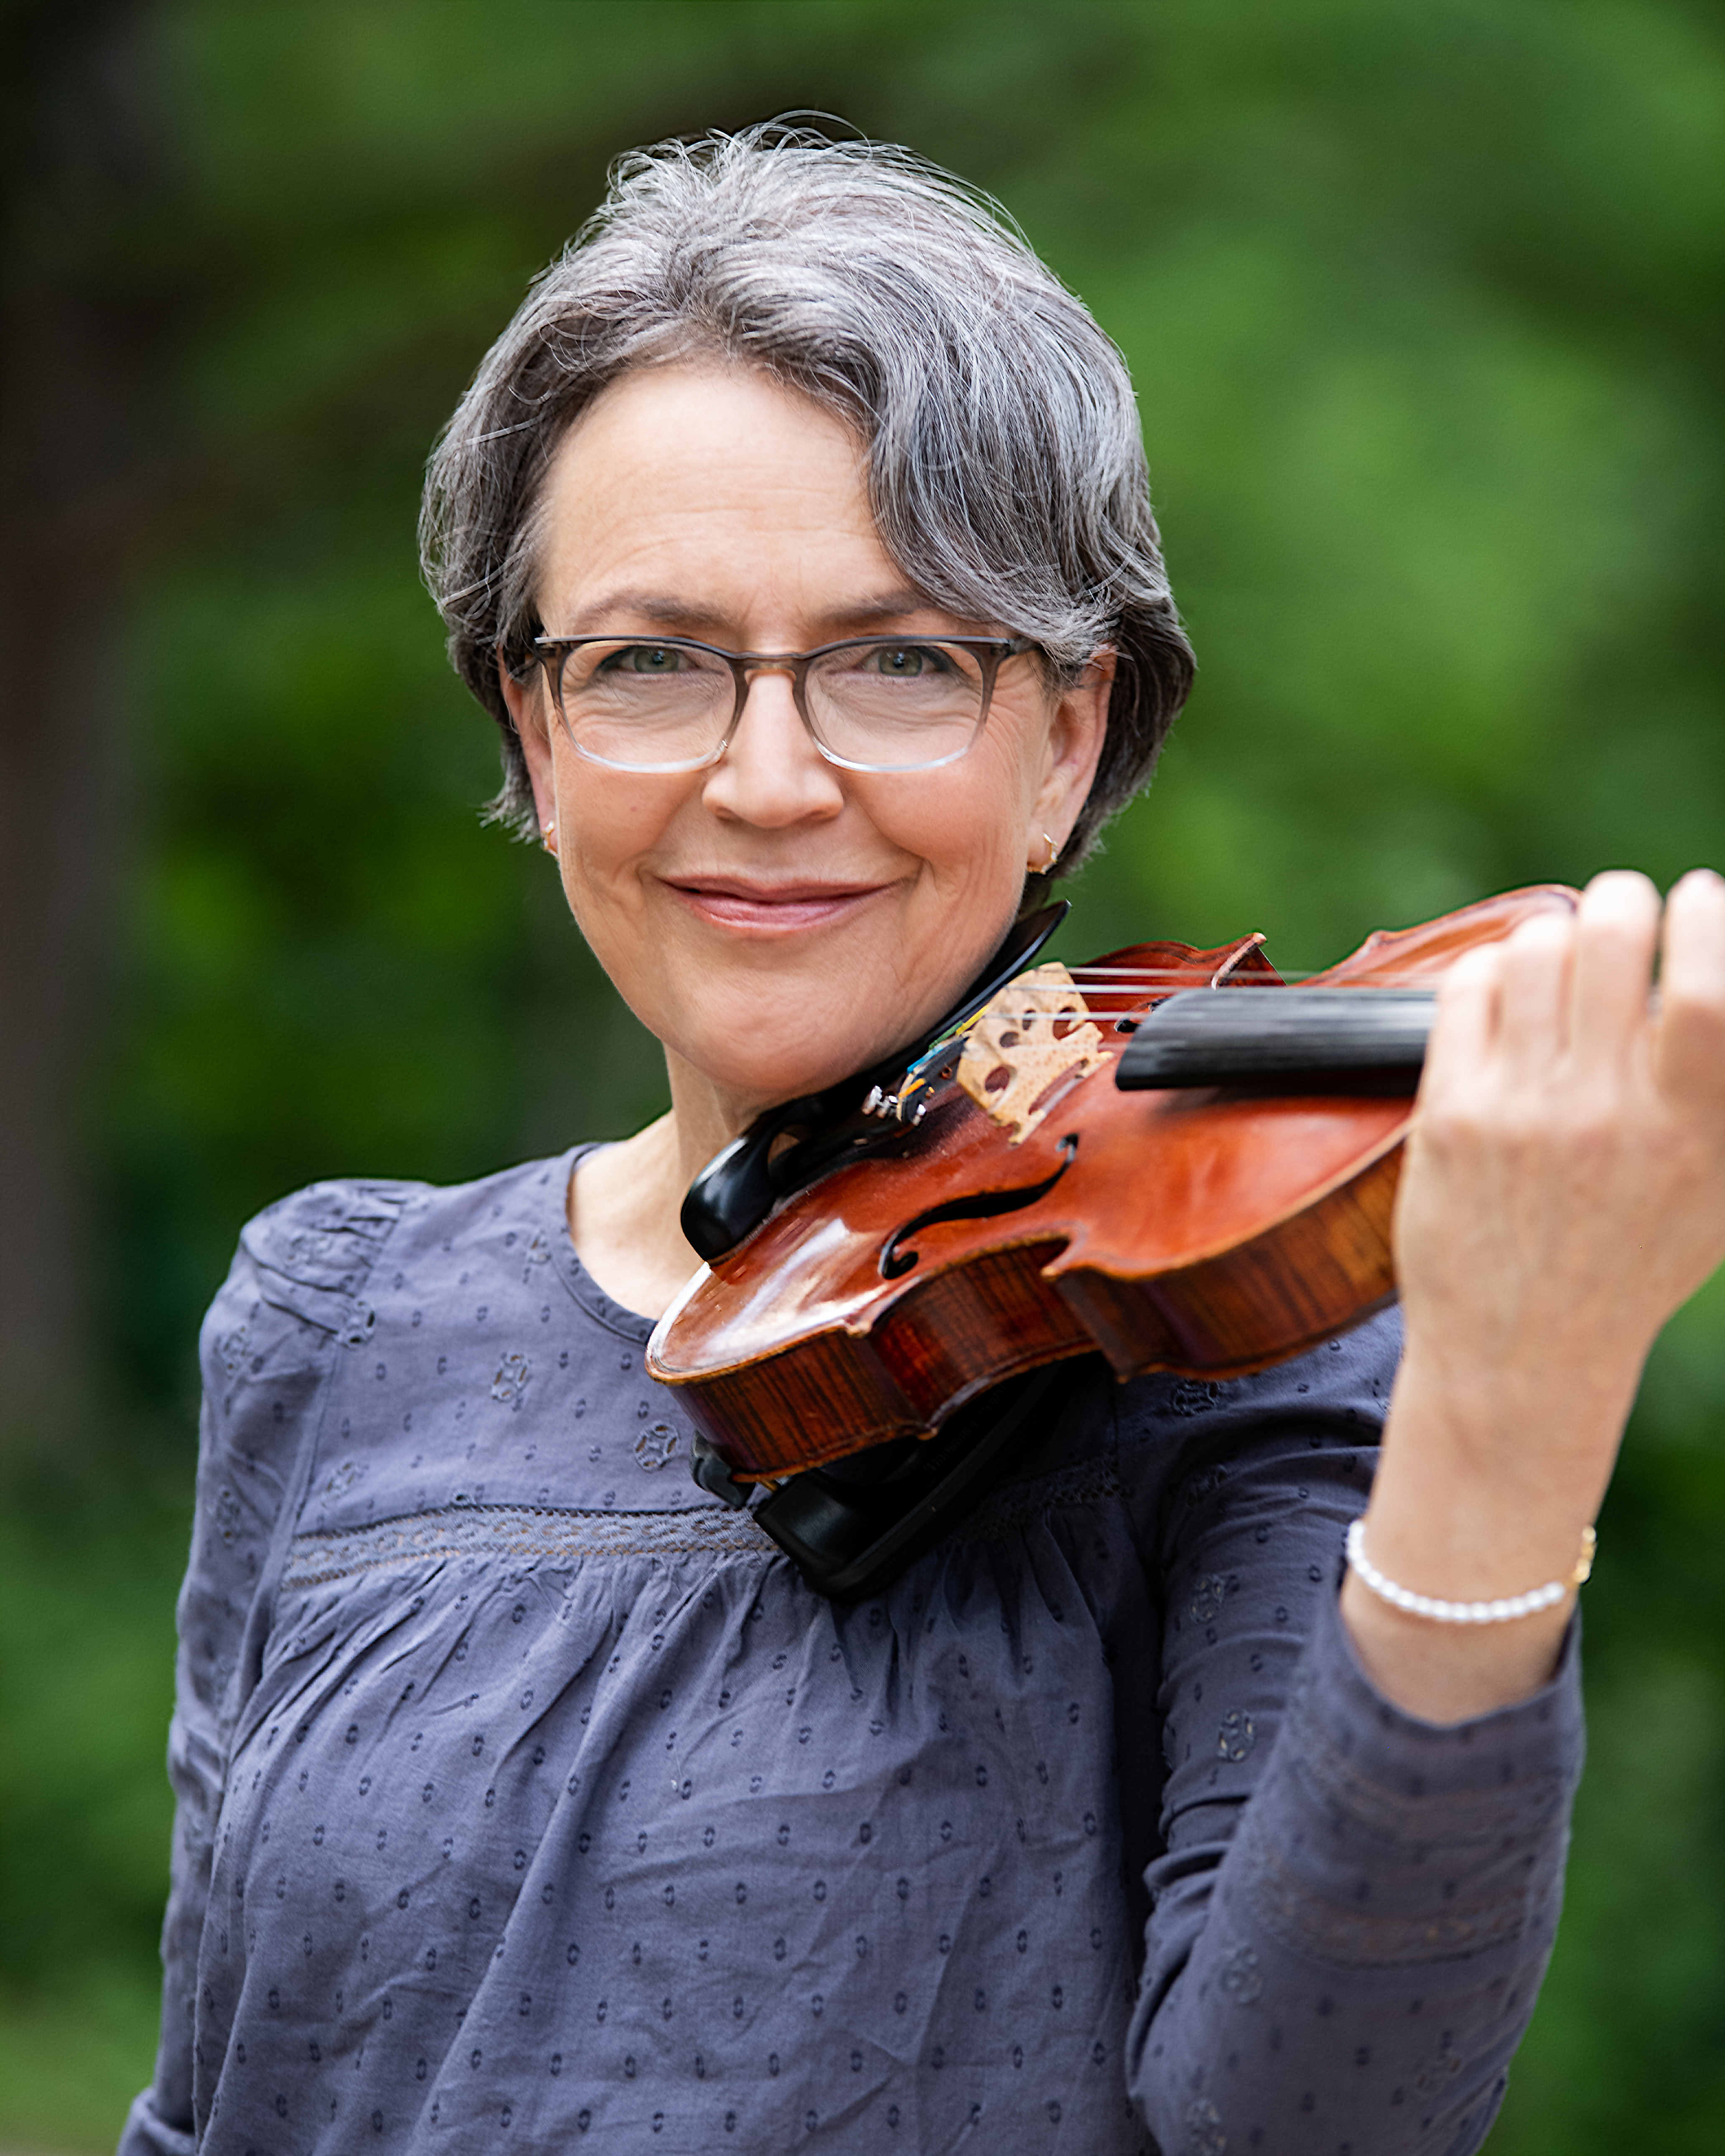 Jennifer Martens holding violin